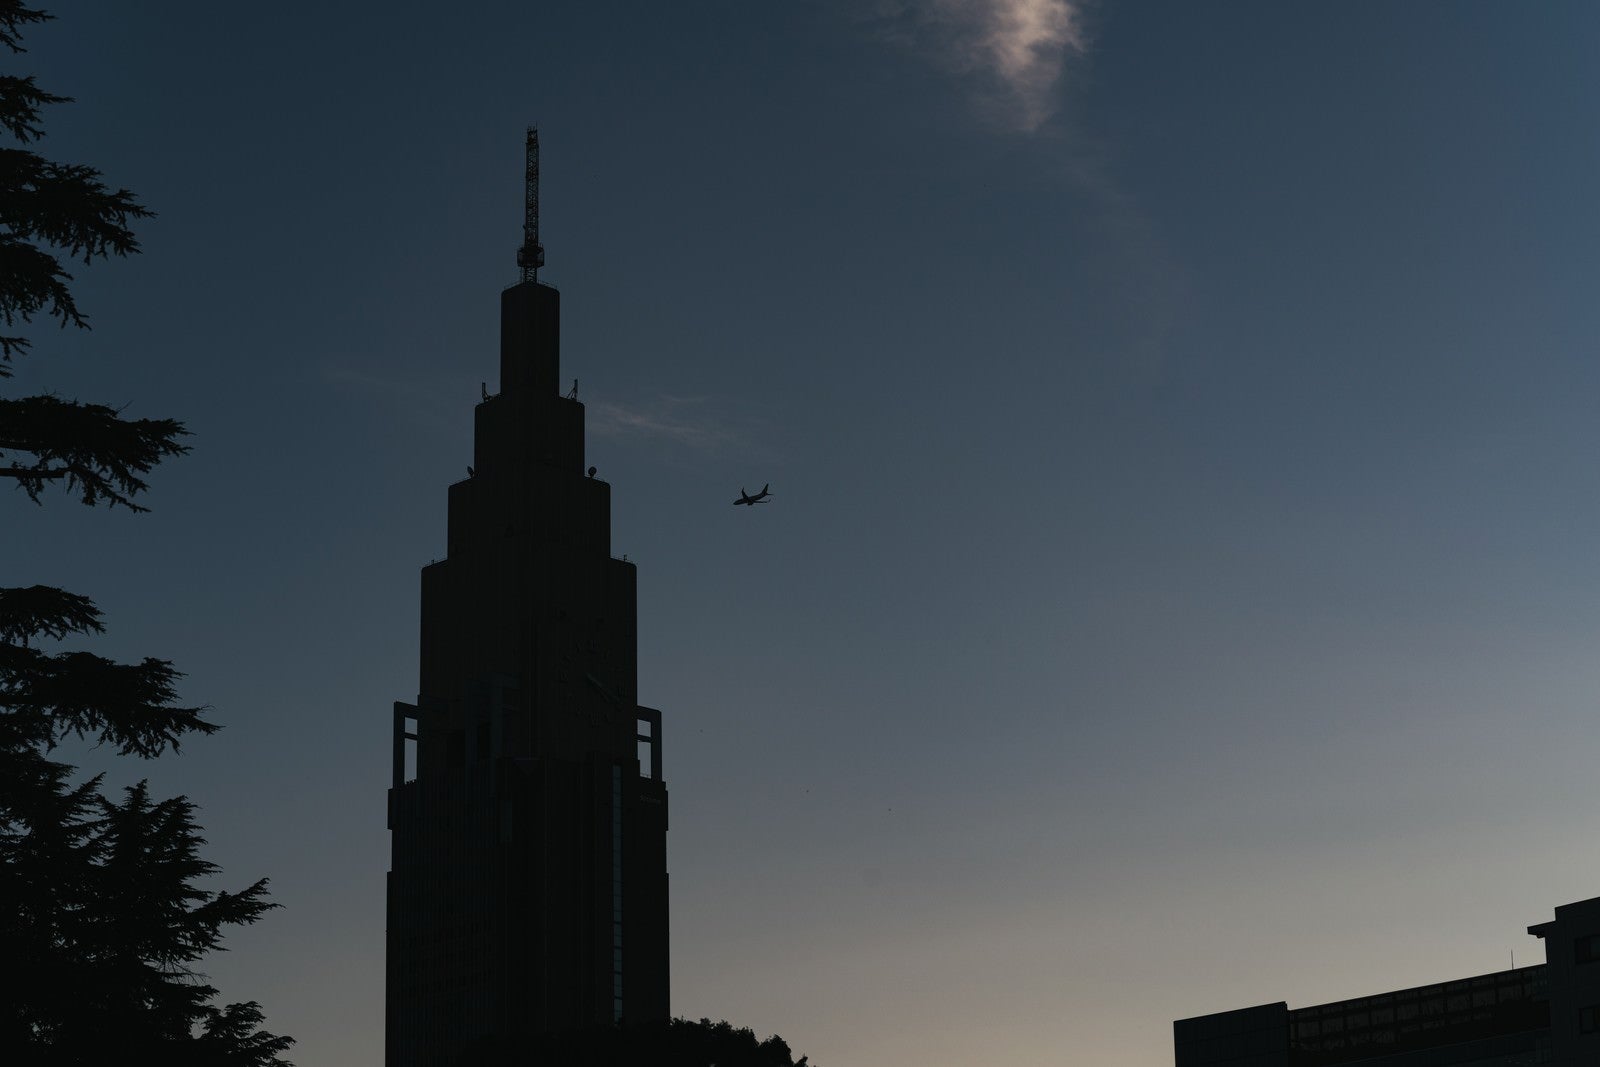 「青空に映る時計台と飛行機のシルエット」の写真